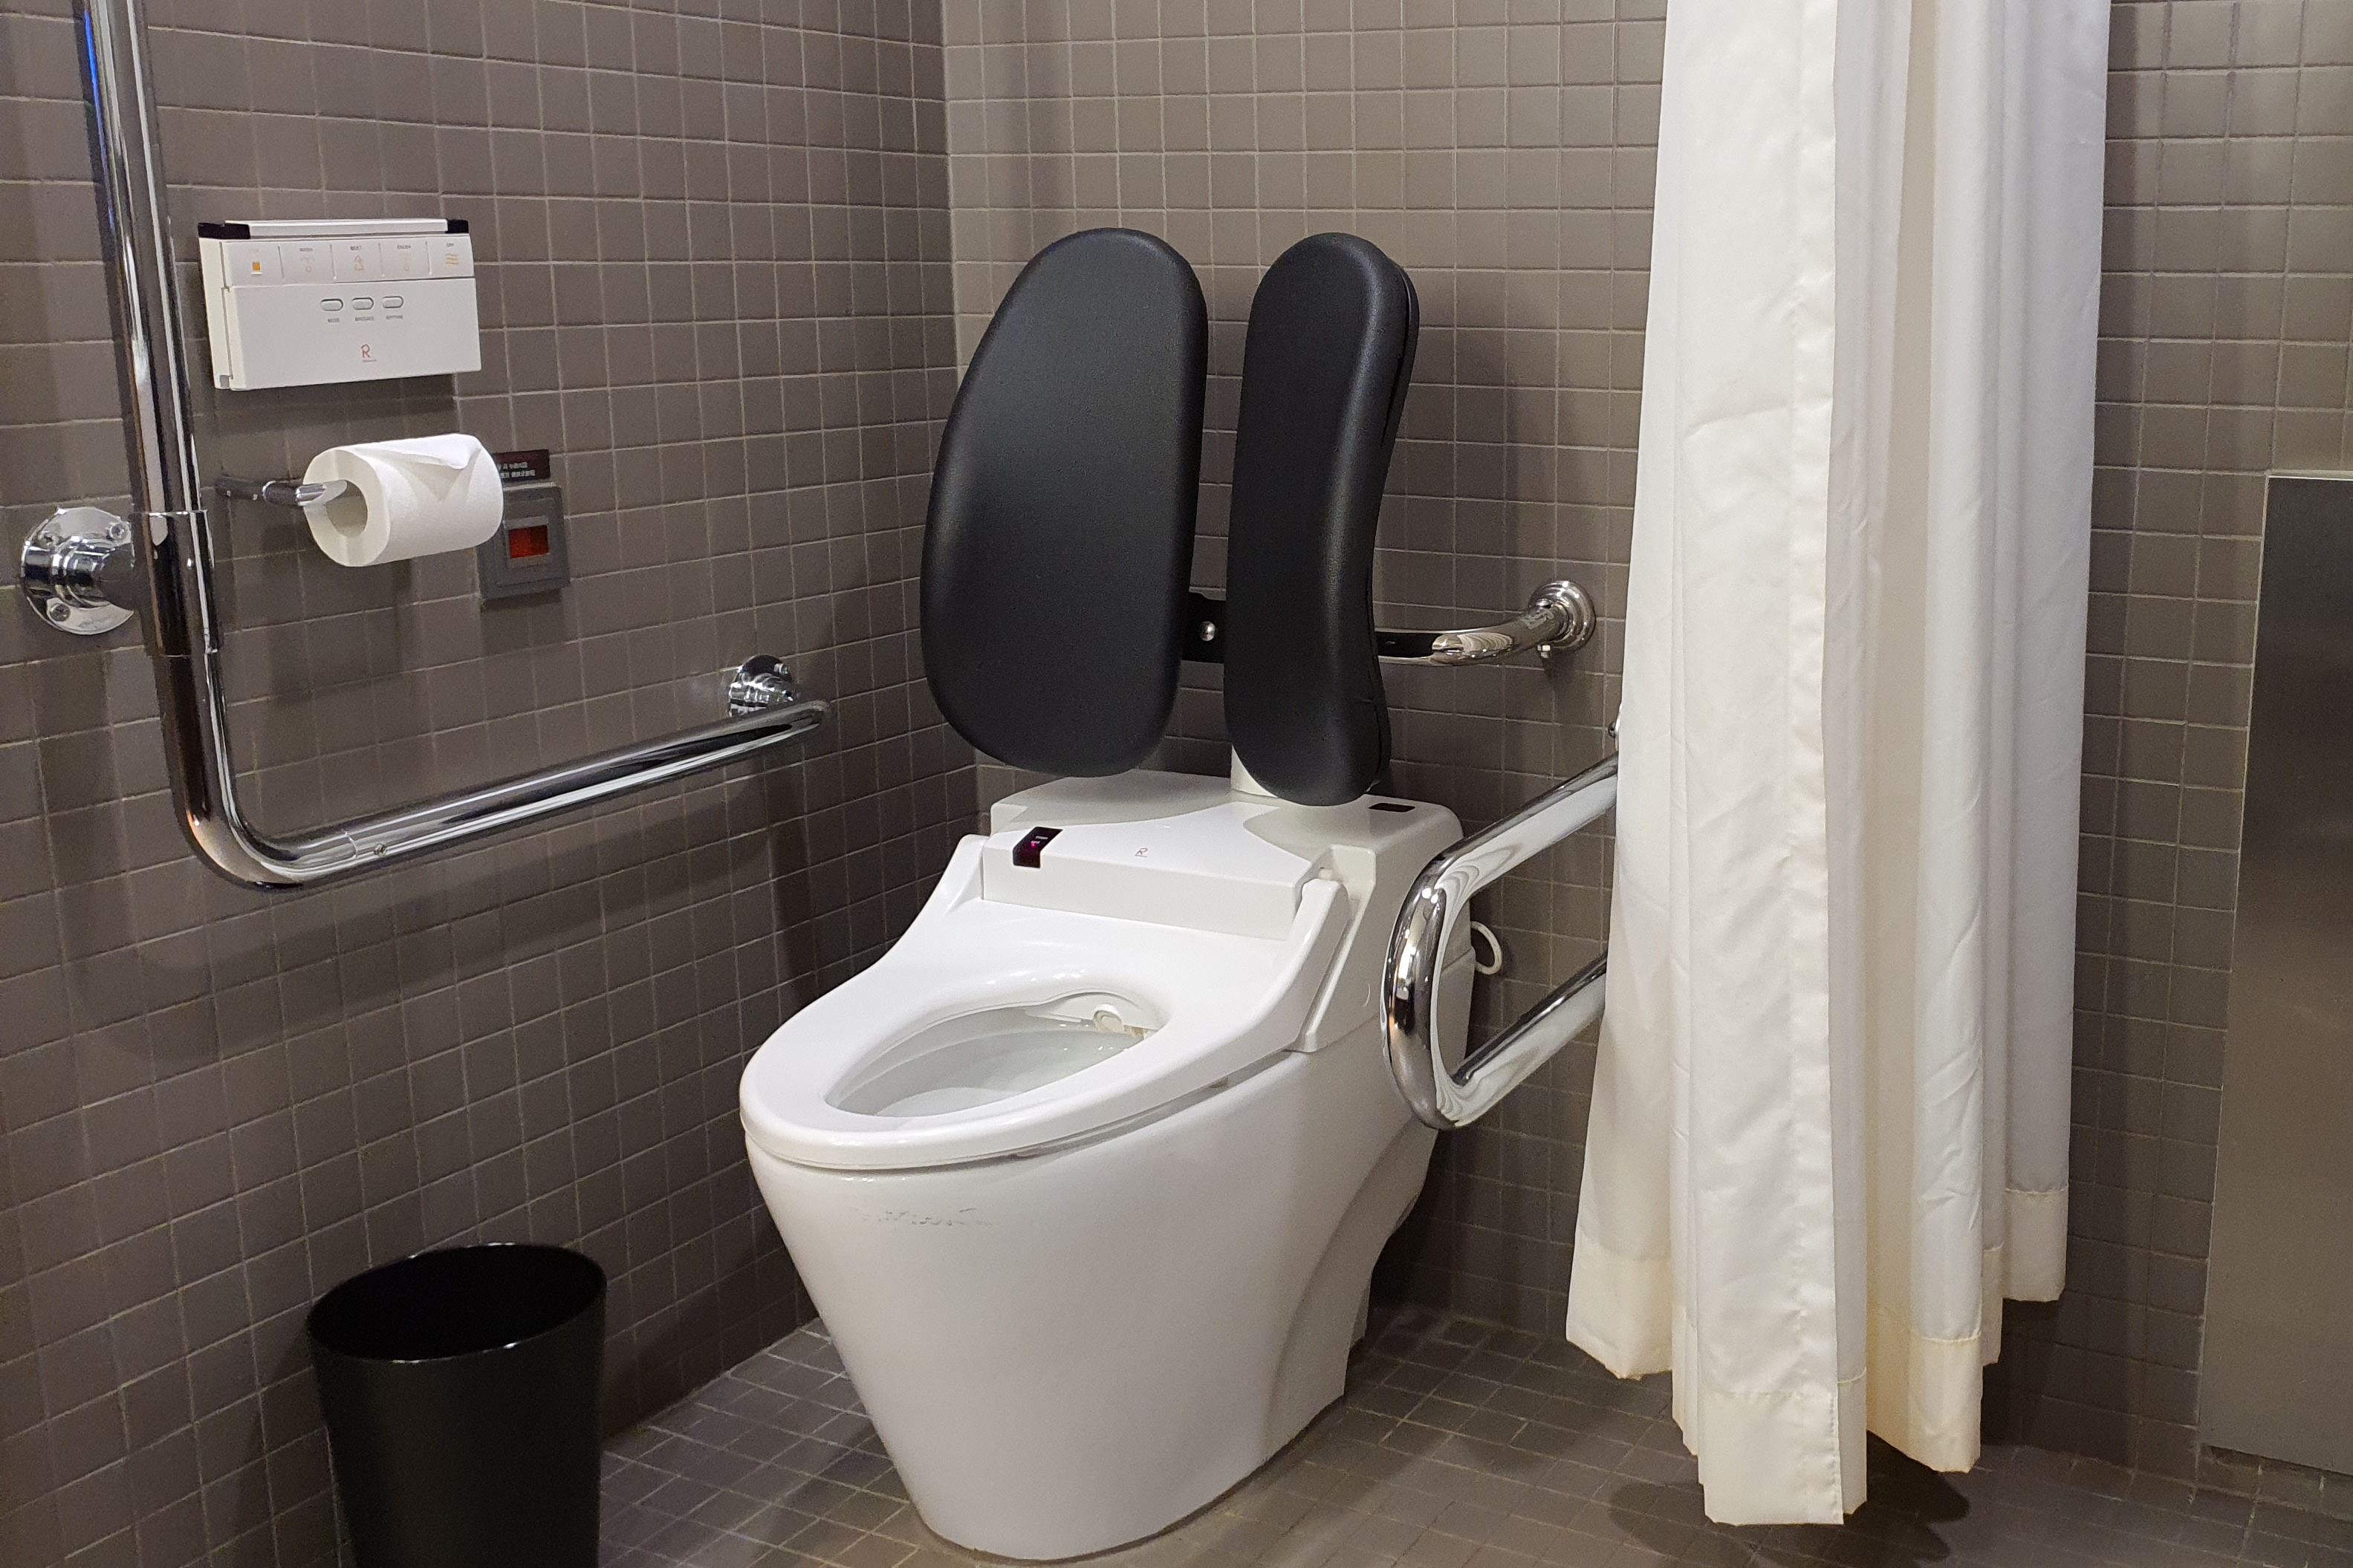 객실 화장실0 : 커튼으로 구분된 안전 손잡이가 설치된 장애인 화장실